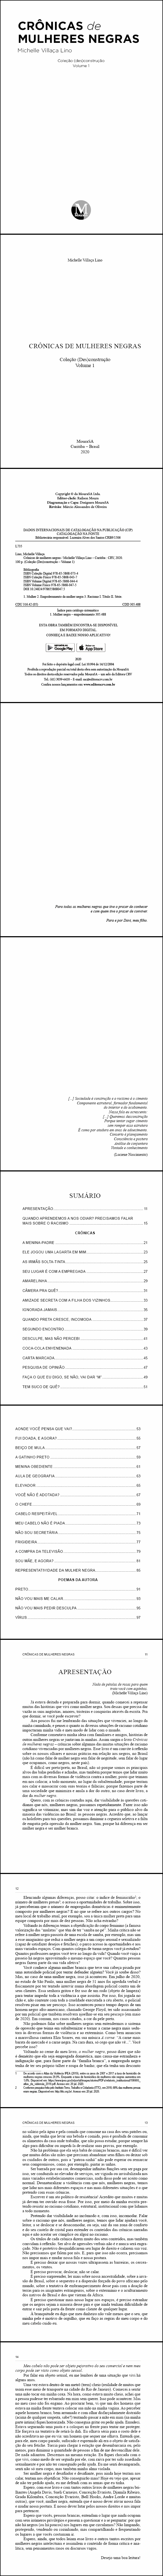 CRÔNICAS DE MULHERES NEGRAS <br> Coleção (Des)construção <br> Volume 1